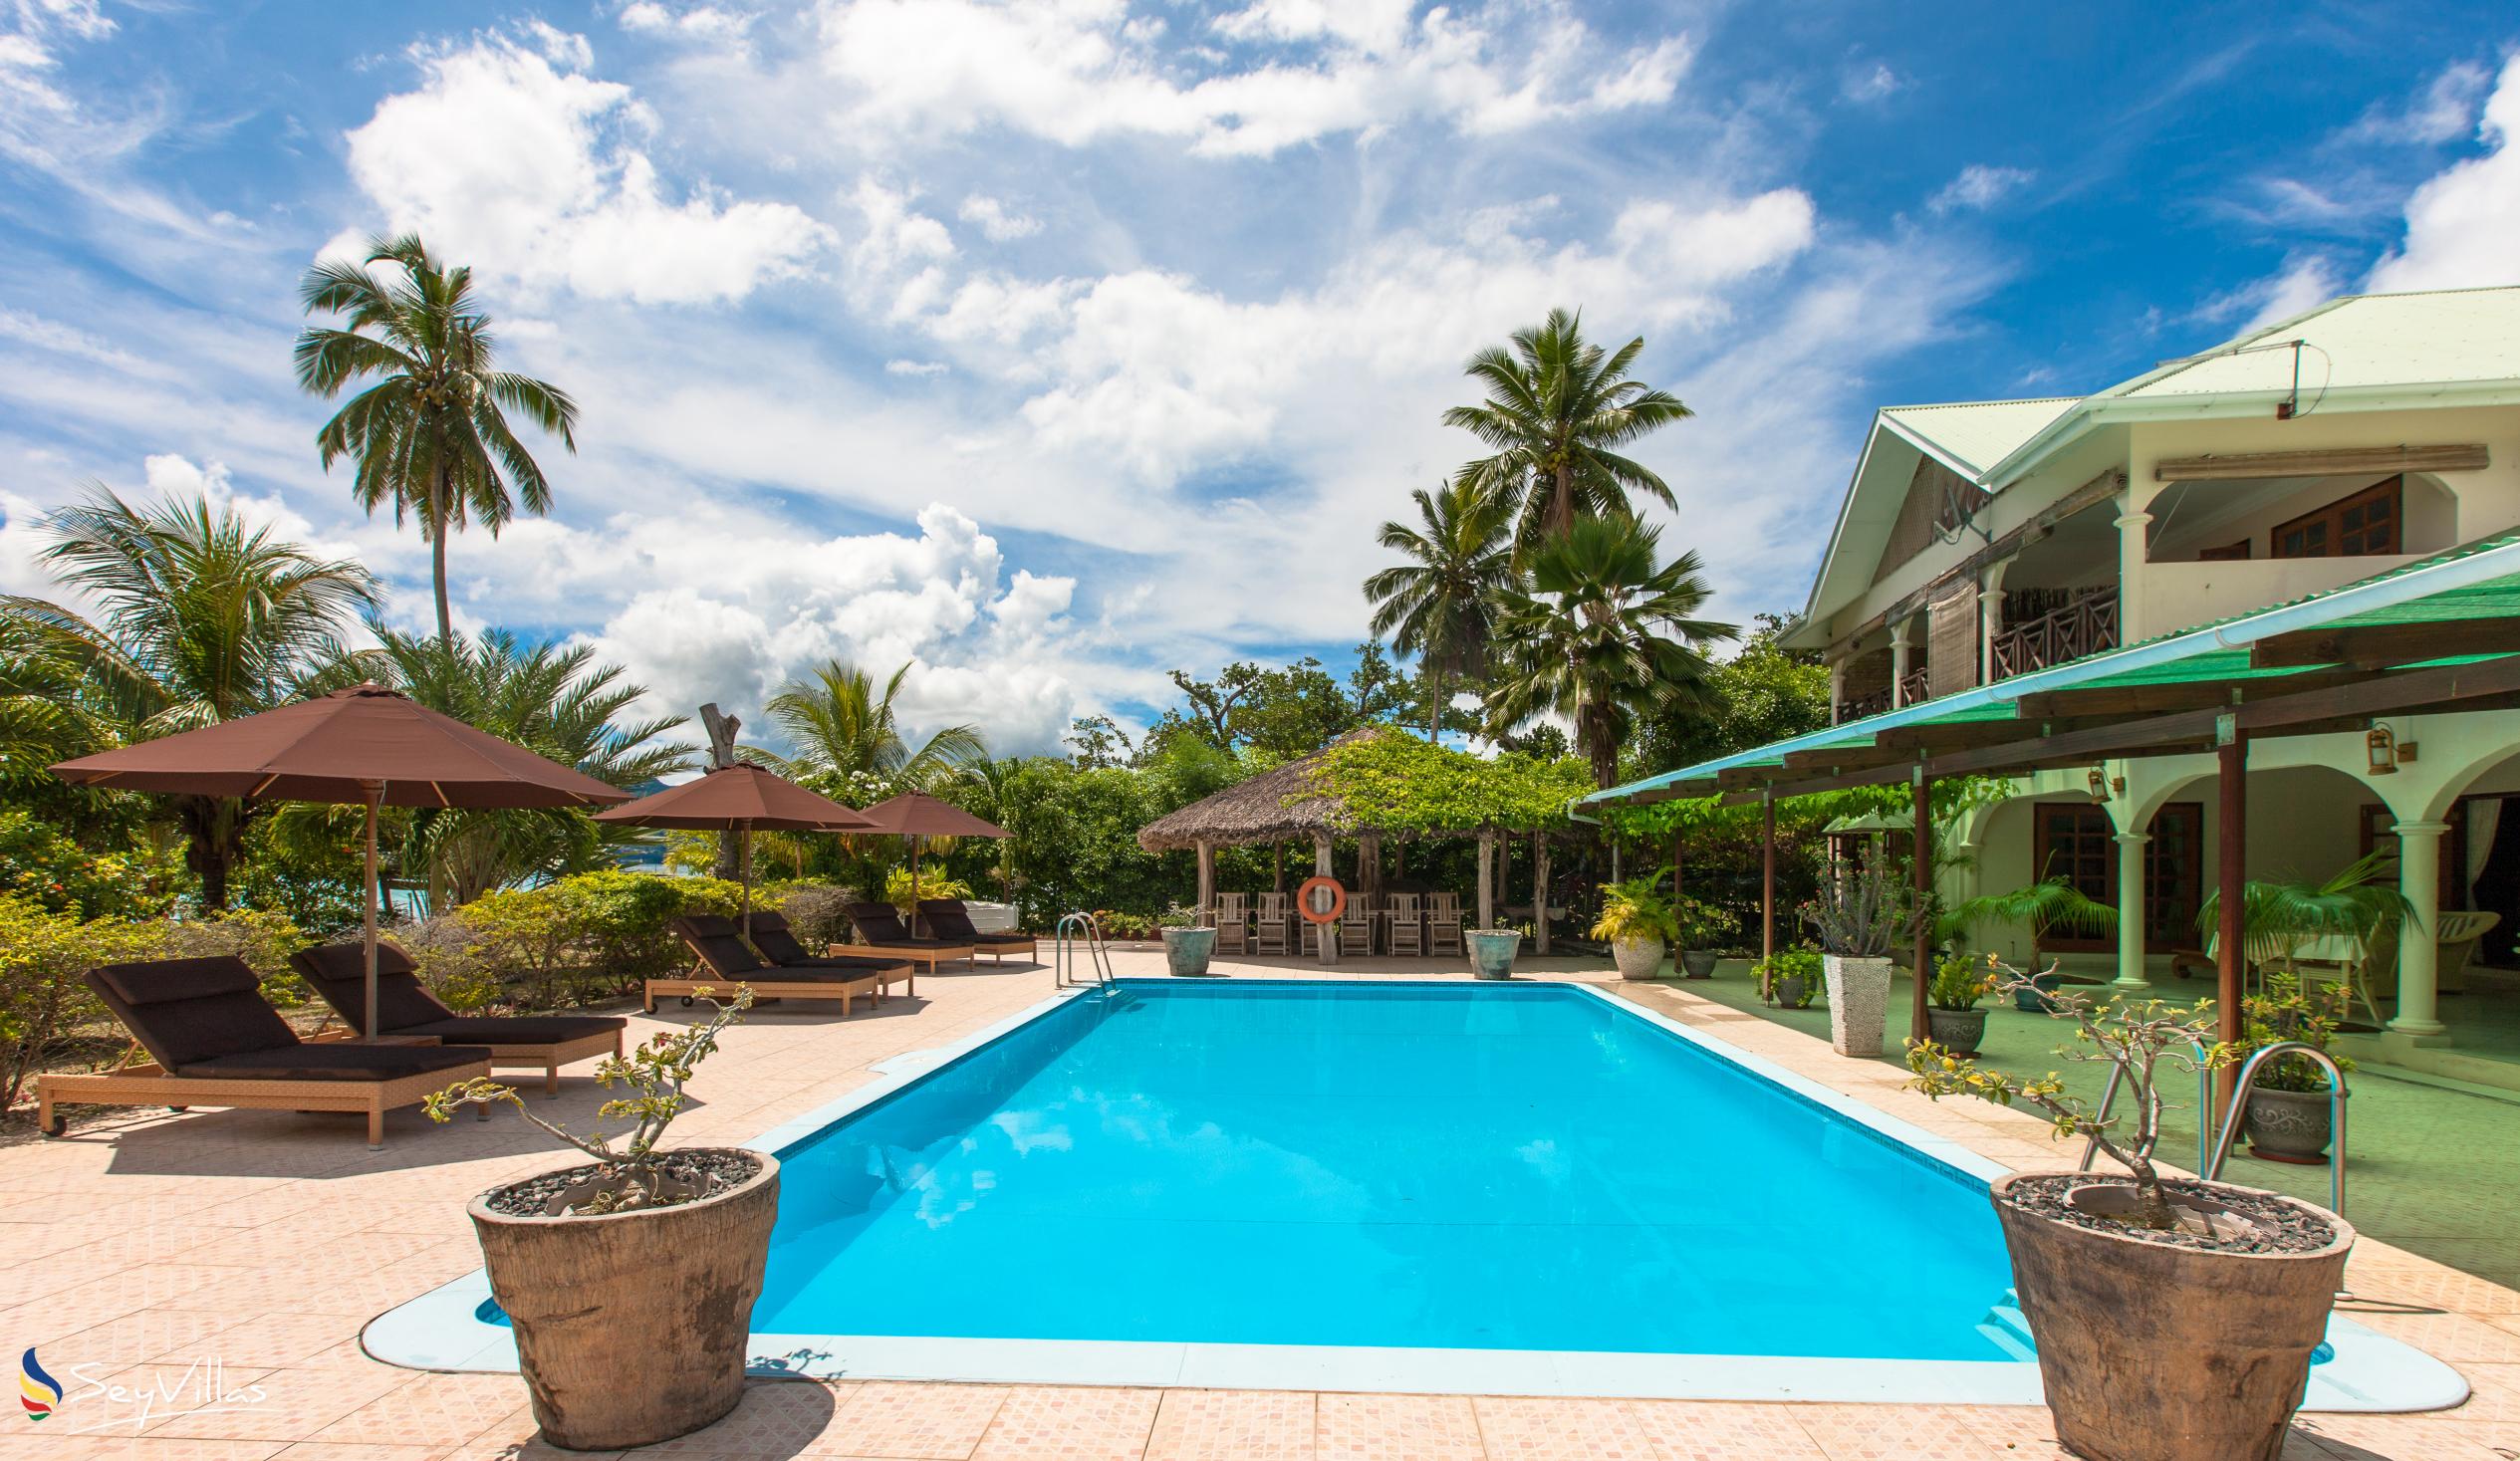 Foto 5: Villa de Cerf - Extérieur - Cerf Island (Seychelles)